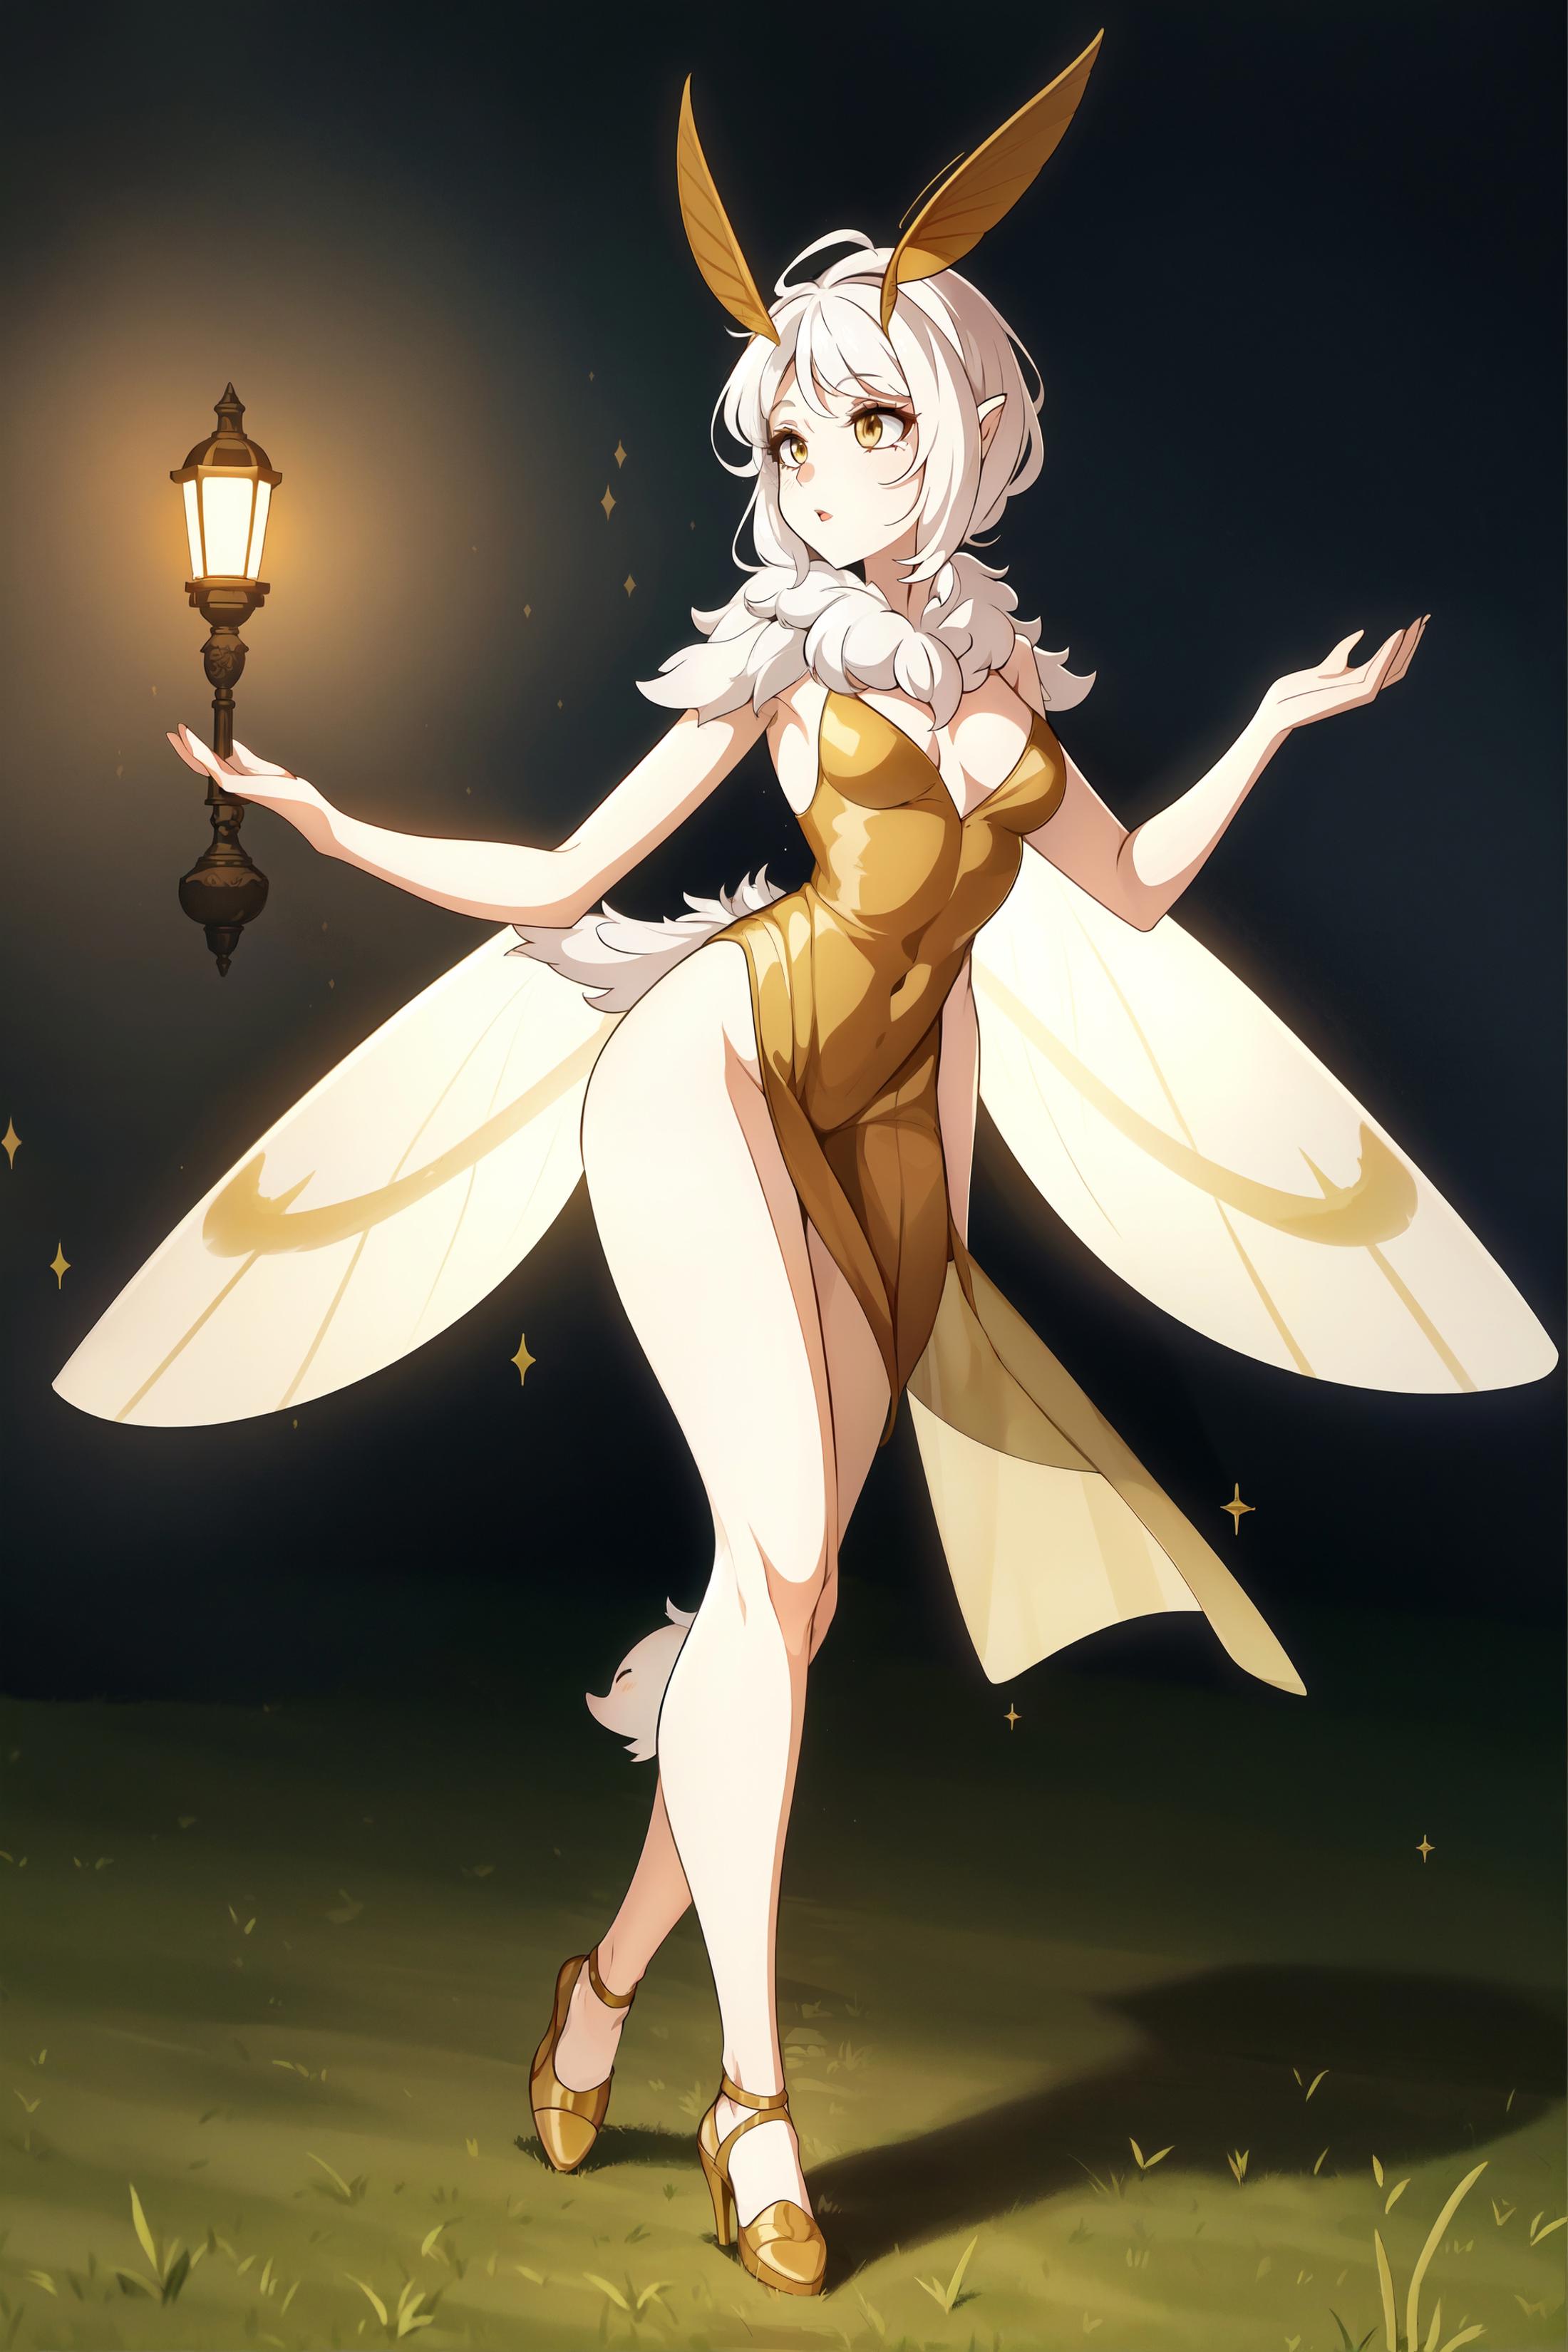 Moth Girls [Lycoris] image by PotatCat